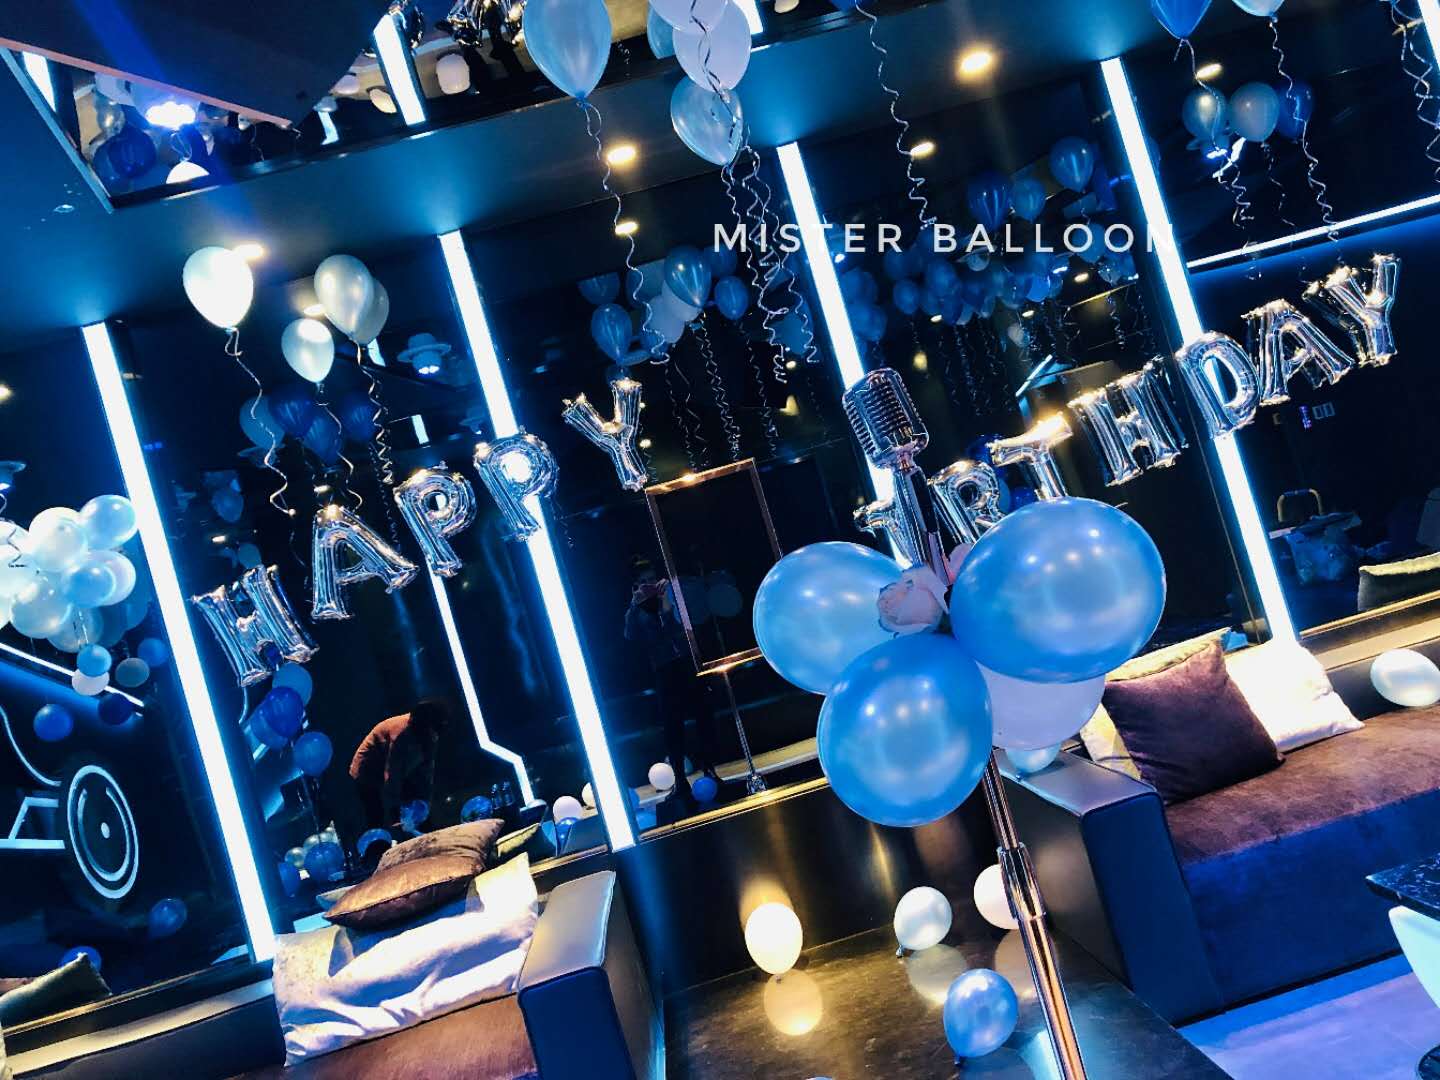 米斯特气球:株洲ktv歌厅生日包厢蓝色气球布置案例分享